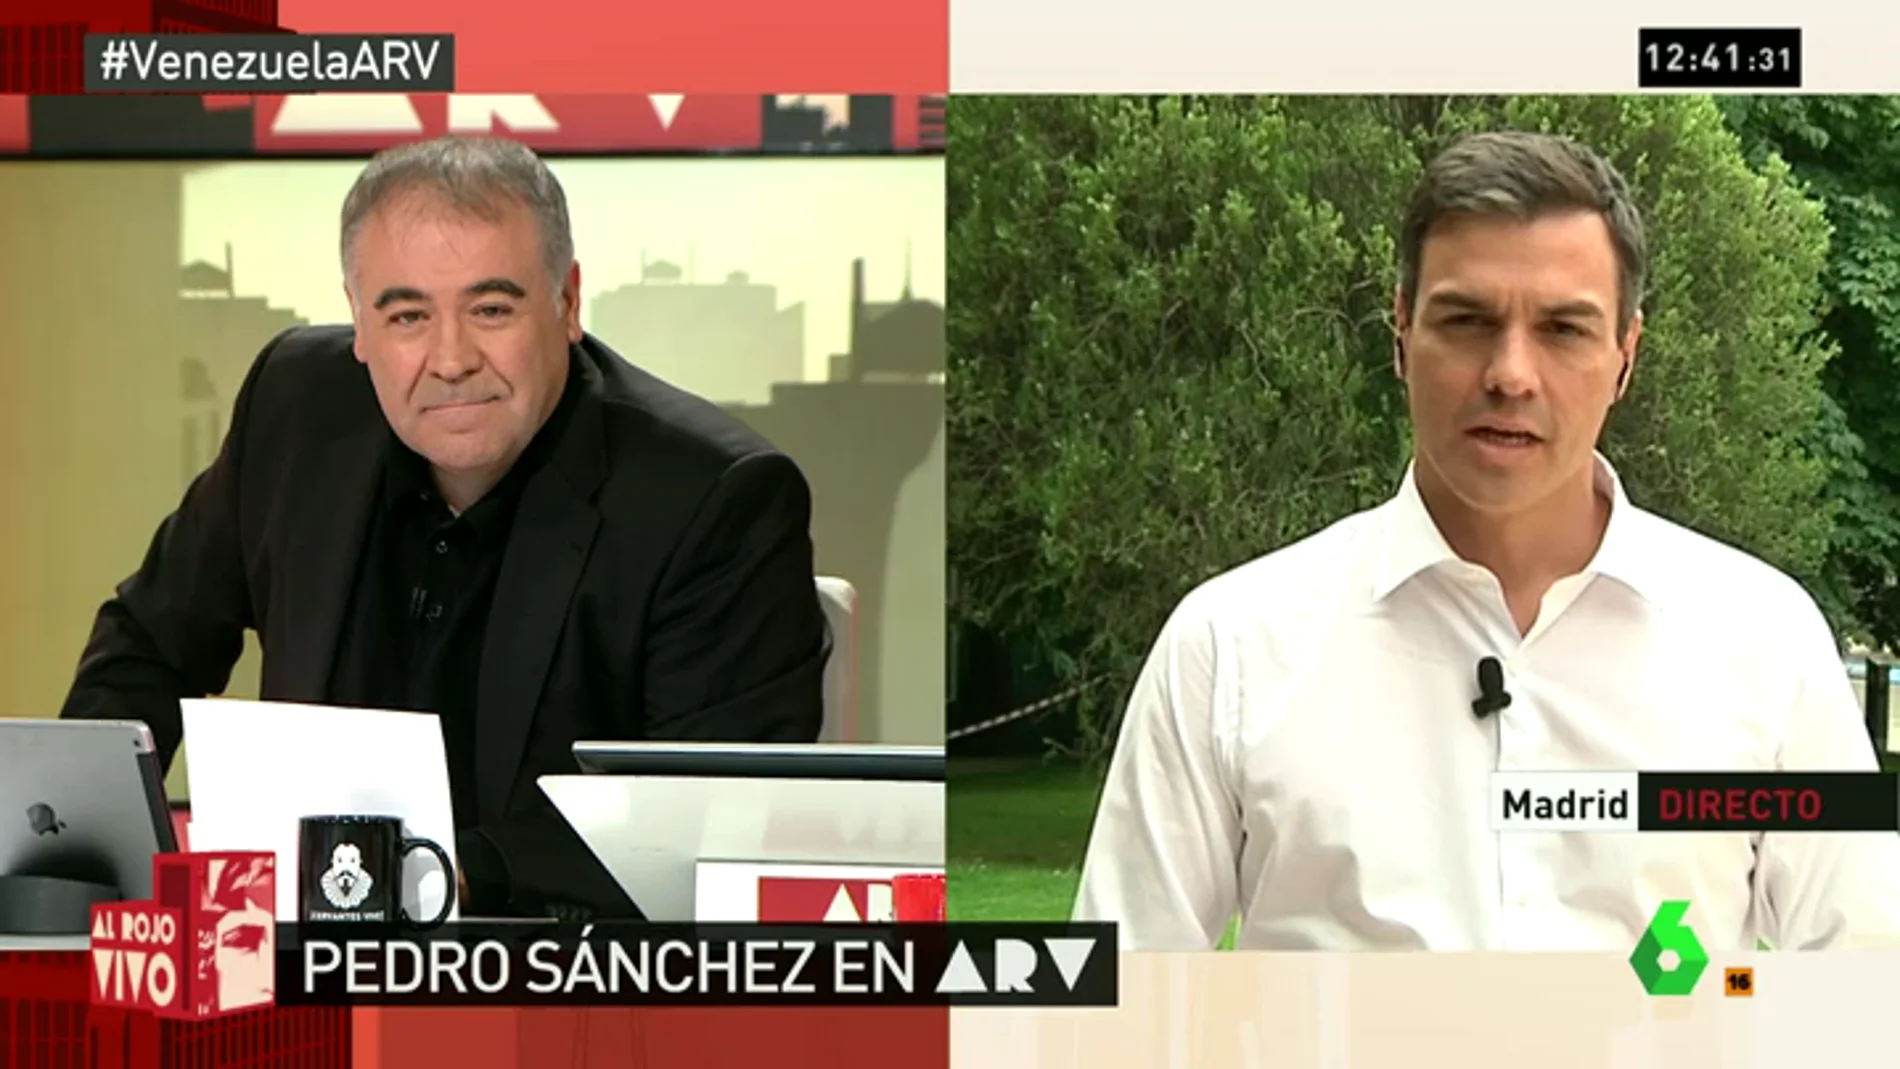 Pedro Sánchez en ARV